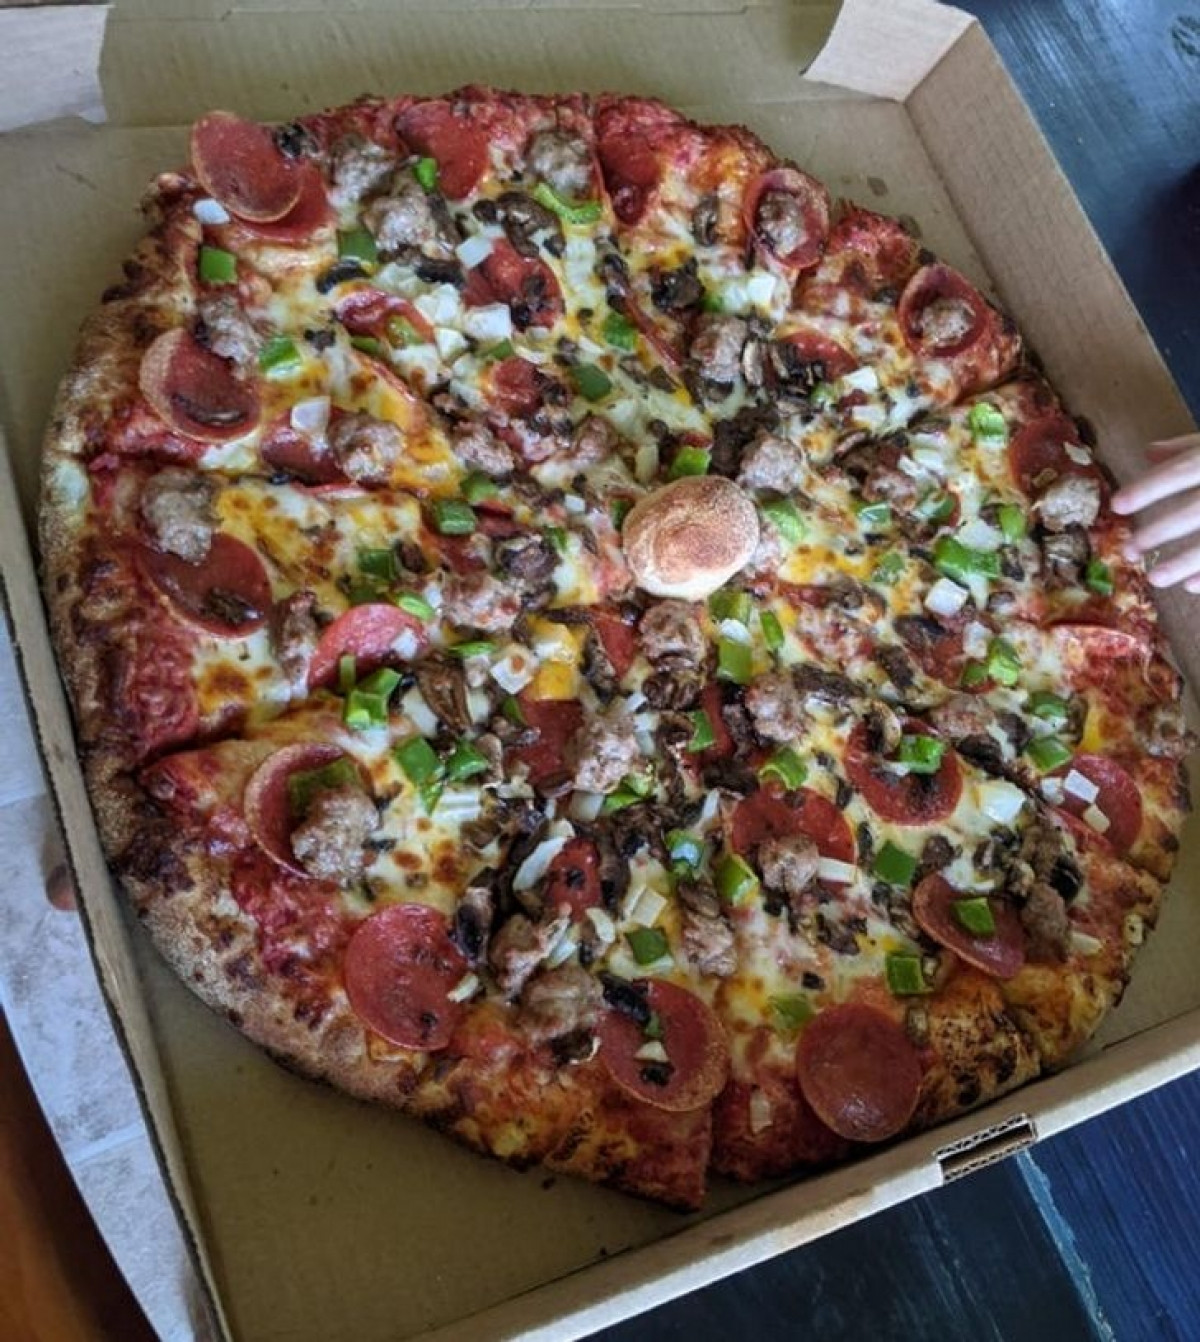 Cửa hàng bánh pizza đã cẩn thận thêm một mẩu bánh mì ở giữa chiếc pizza để nắp bìa trên của hộp đựng bánh không còn bị dính vào phần nhân bánh. 